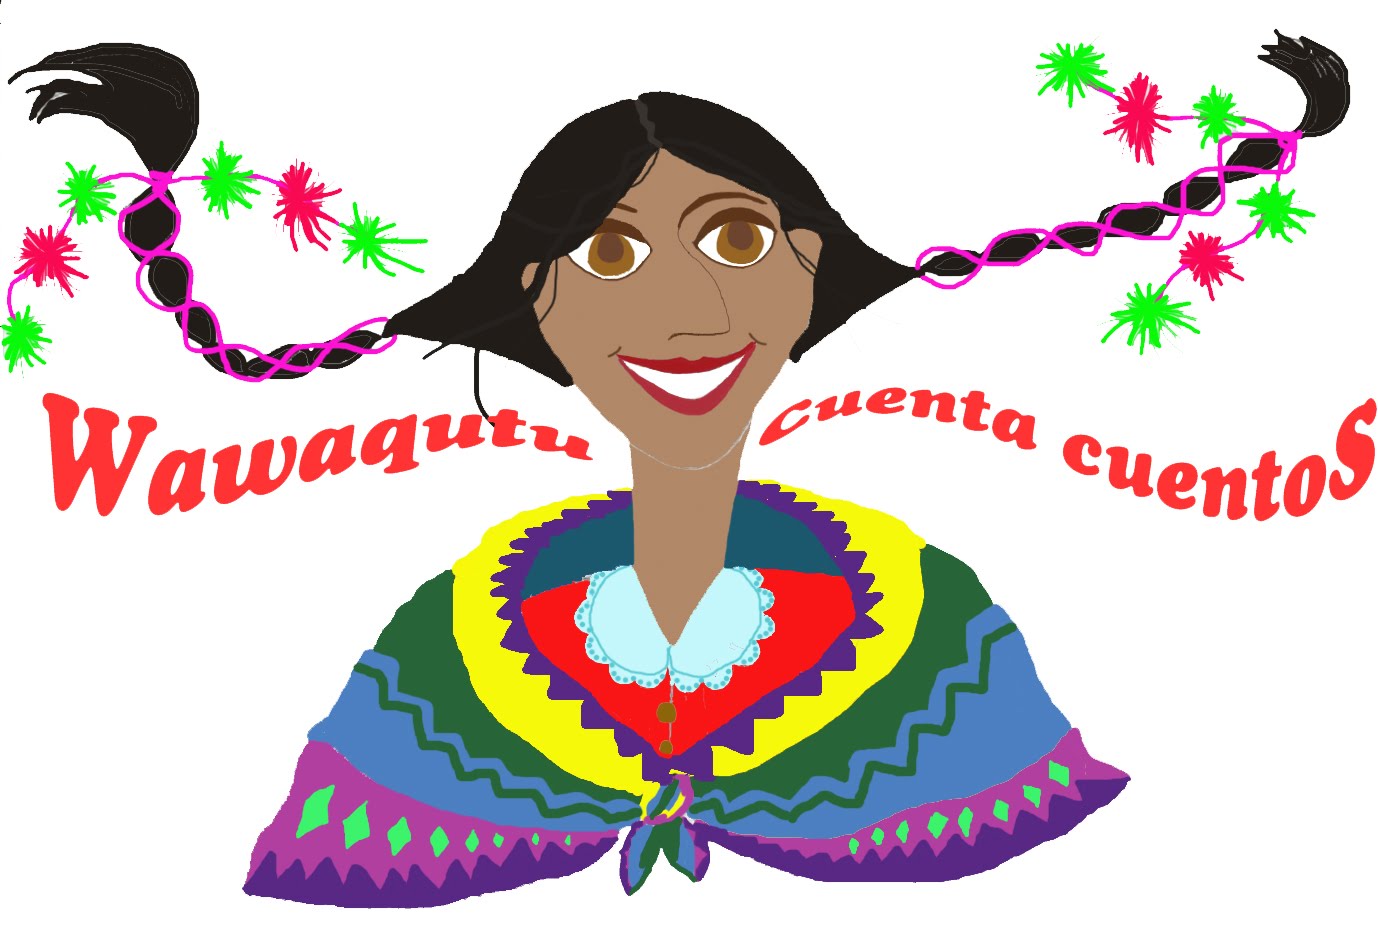 Wawaqutu cuenta cuentos